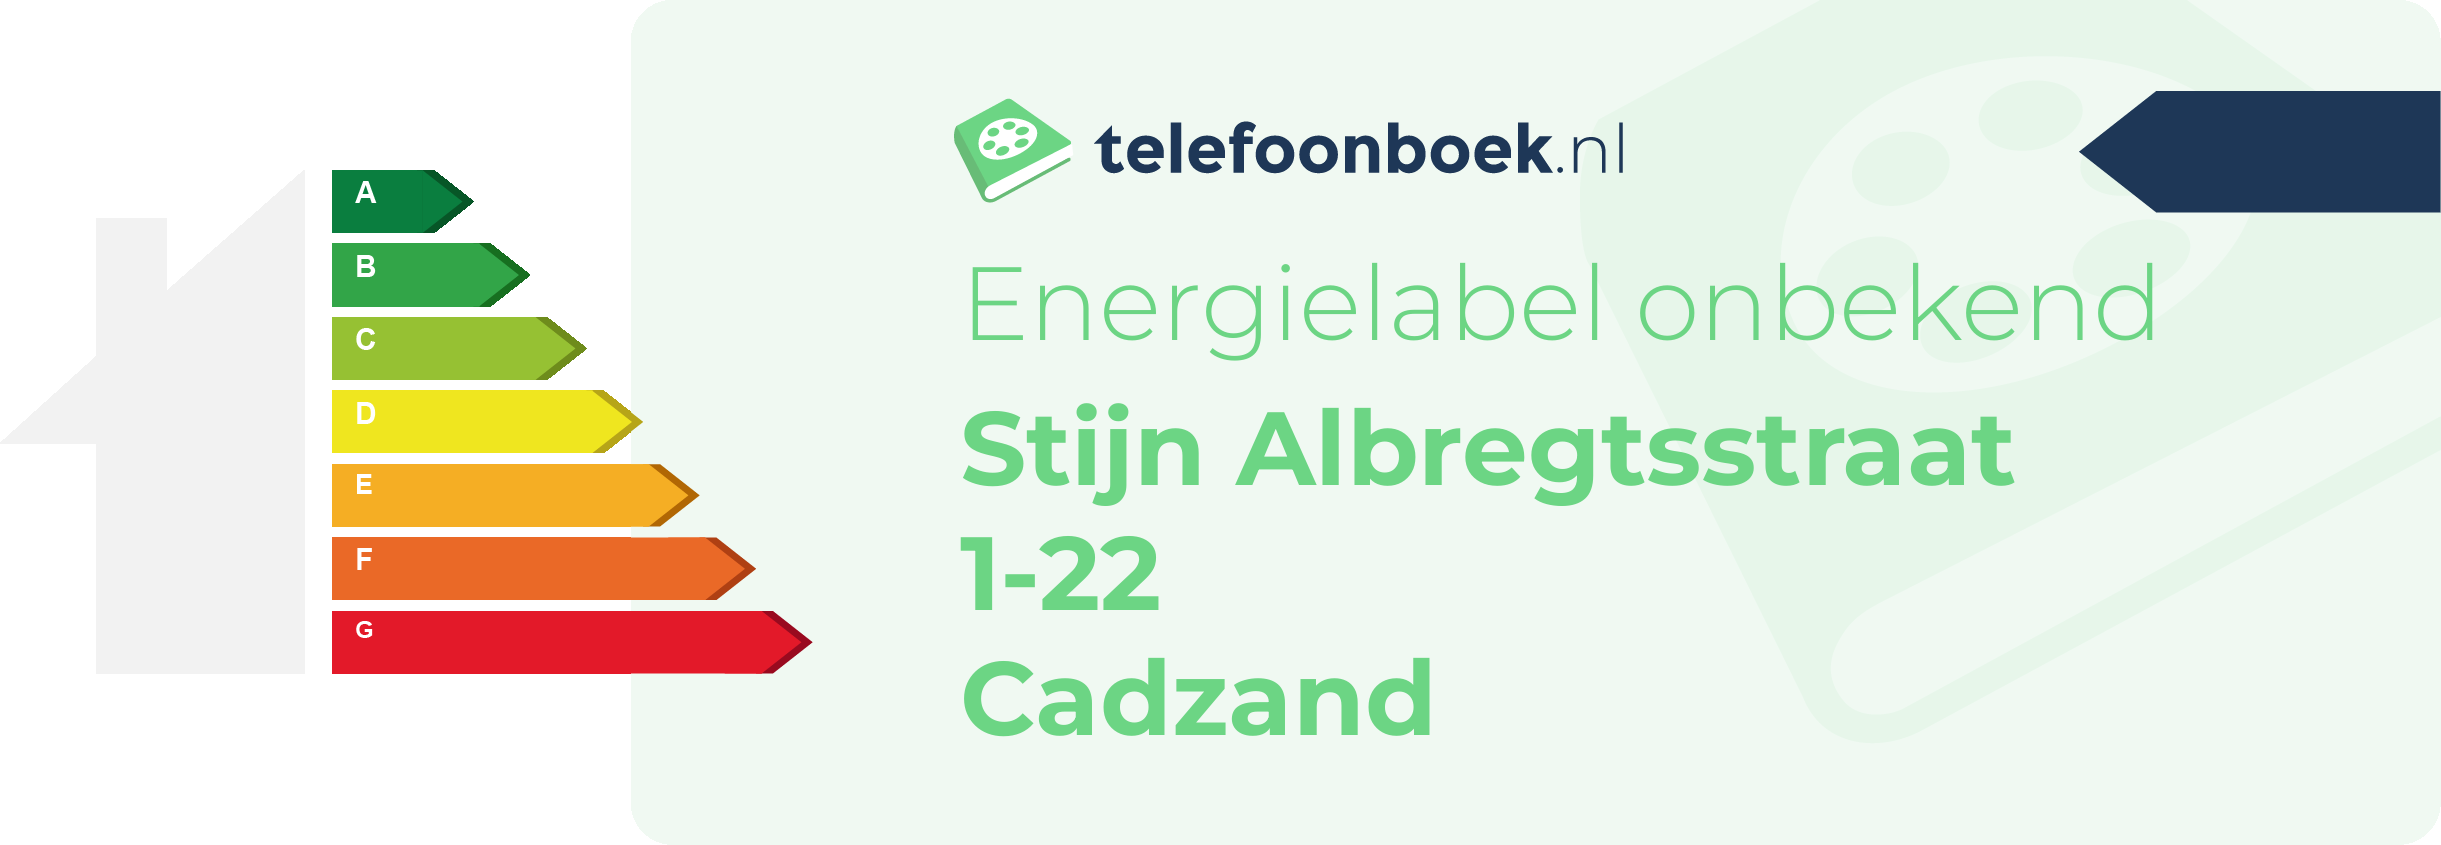 Energielabel Stijn Albregtsstraat 1-22 Cadzand